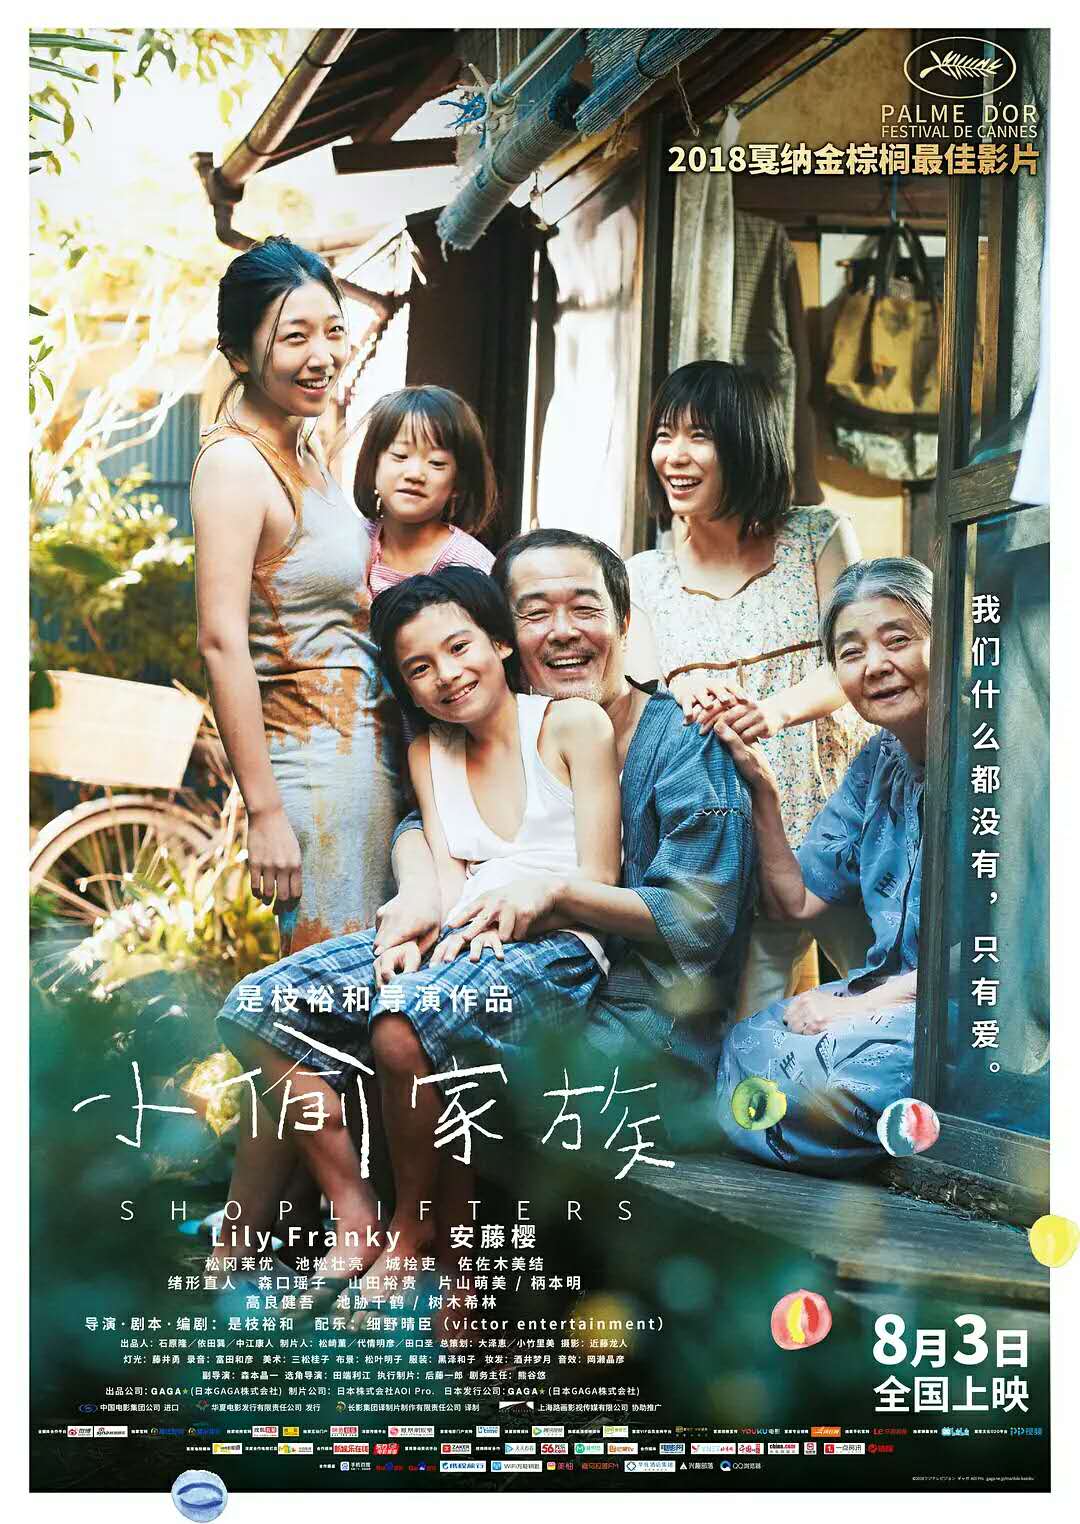 日本电影大师是枝裕和执导 金棕榈获奖影片《小偷家族》中国预告片视频